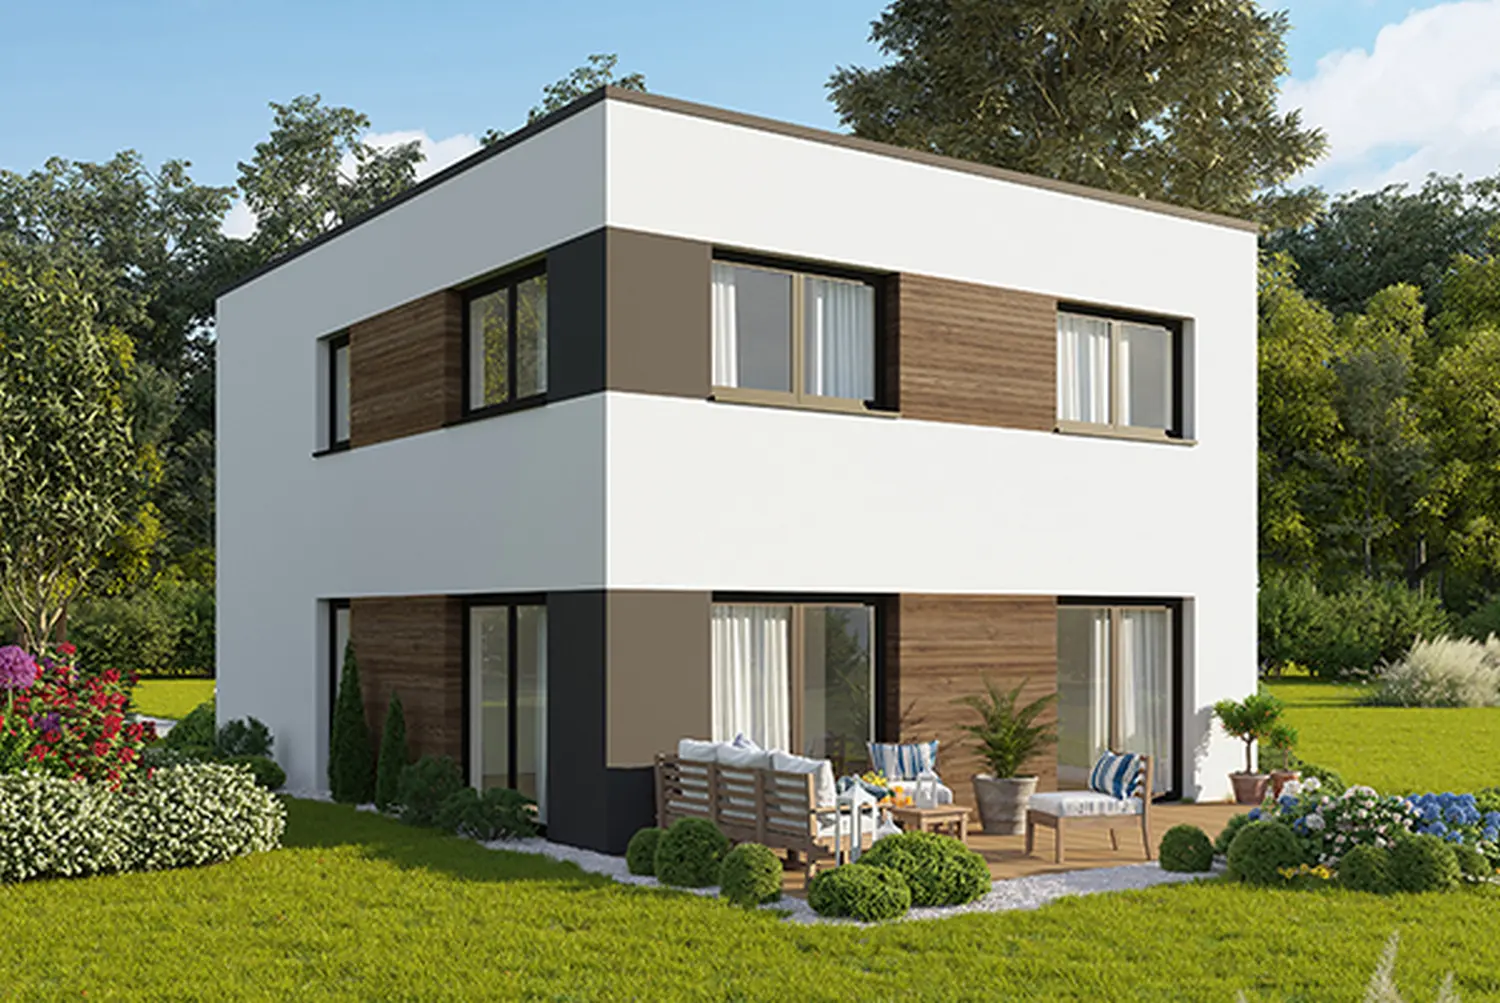 Attraktive Wohnen GmbH modernes Einfamilienhaus